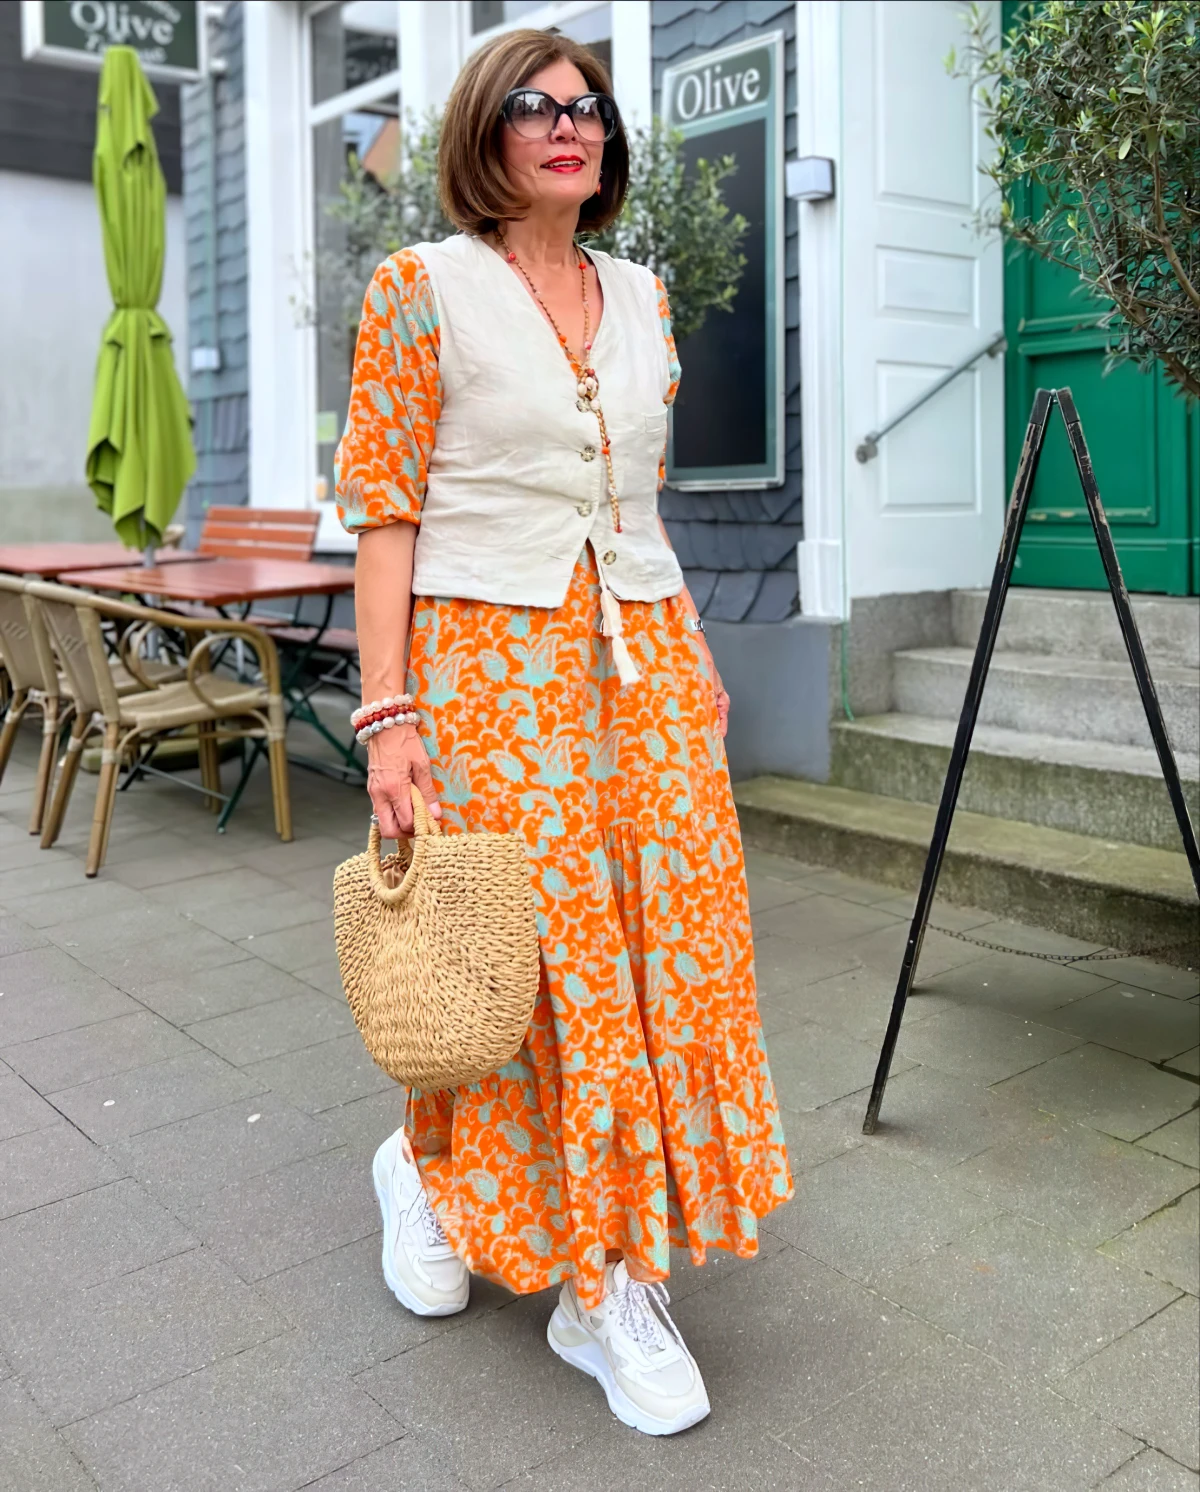 tenue moderne boheme chic pour femme de plus de 50 ans rove orange